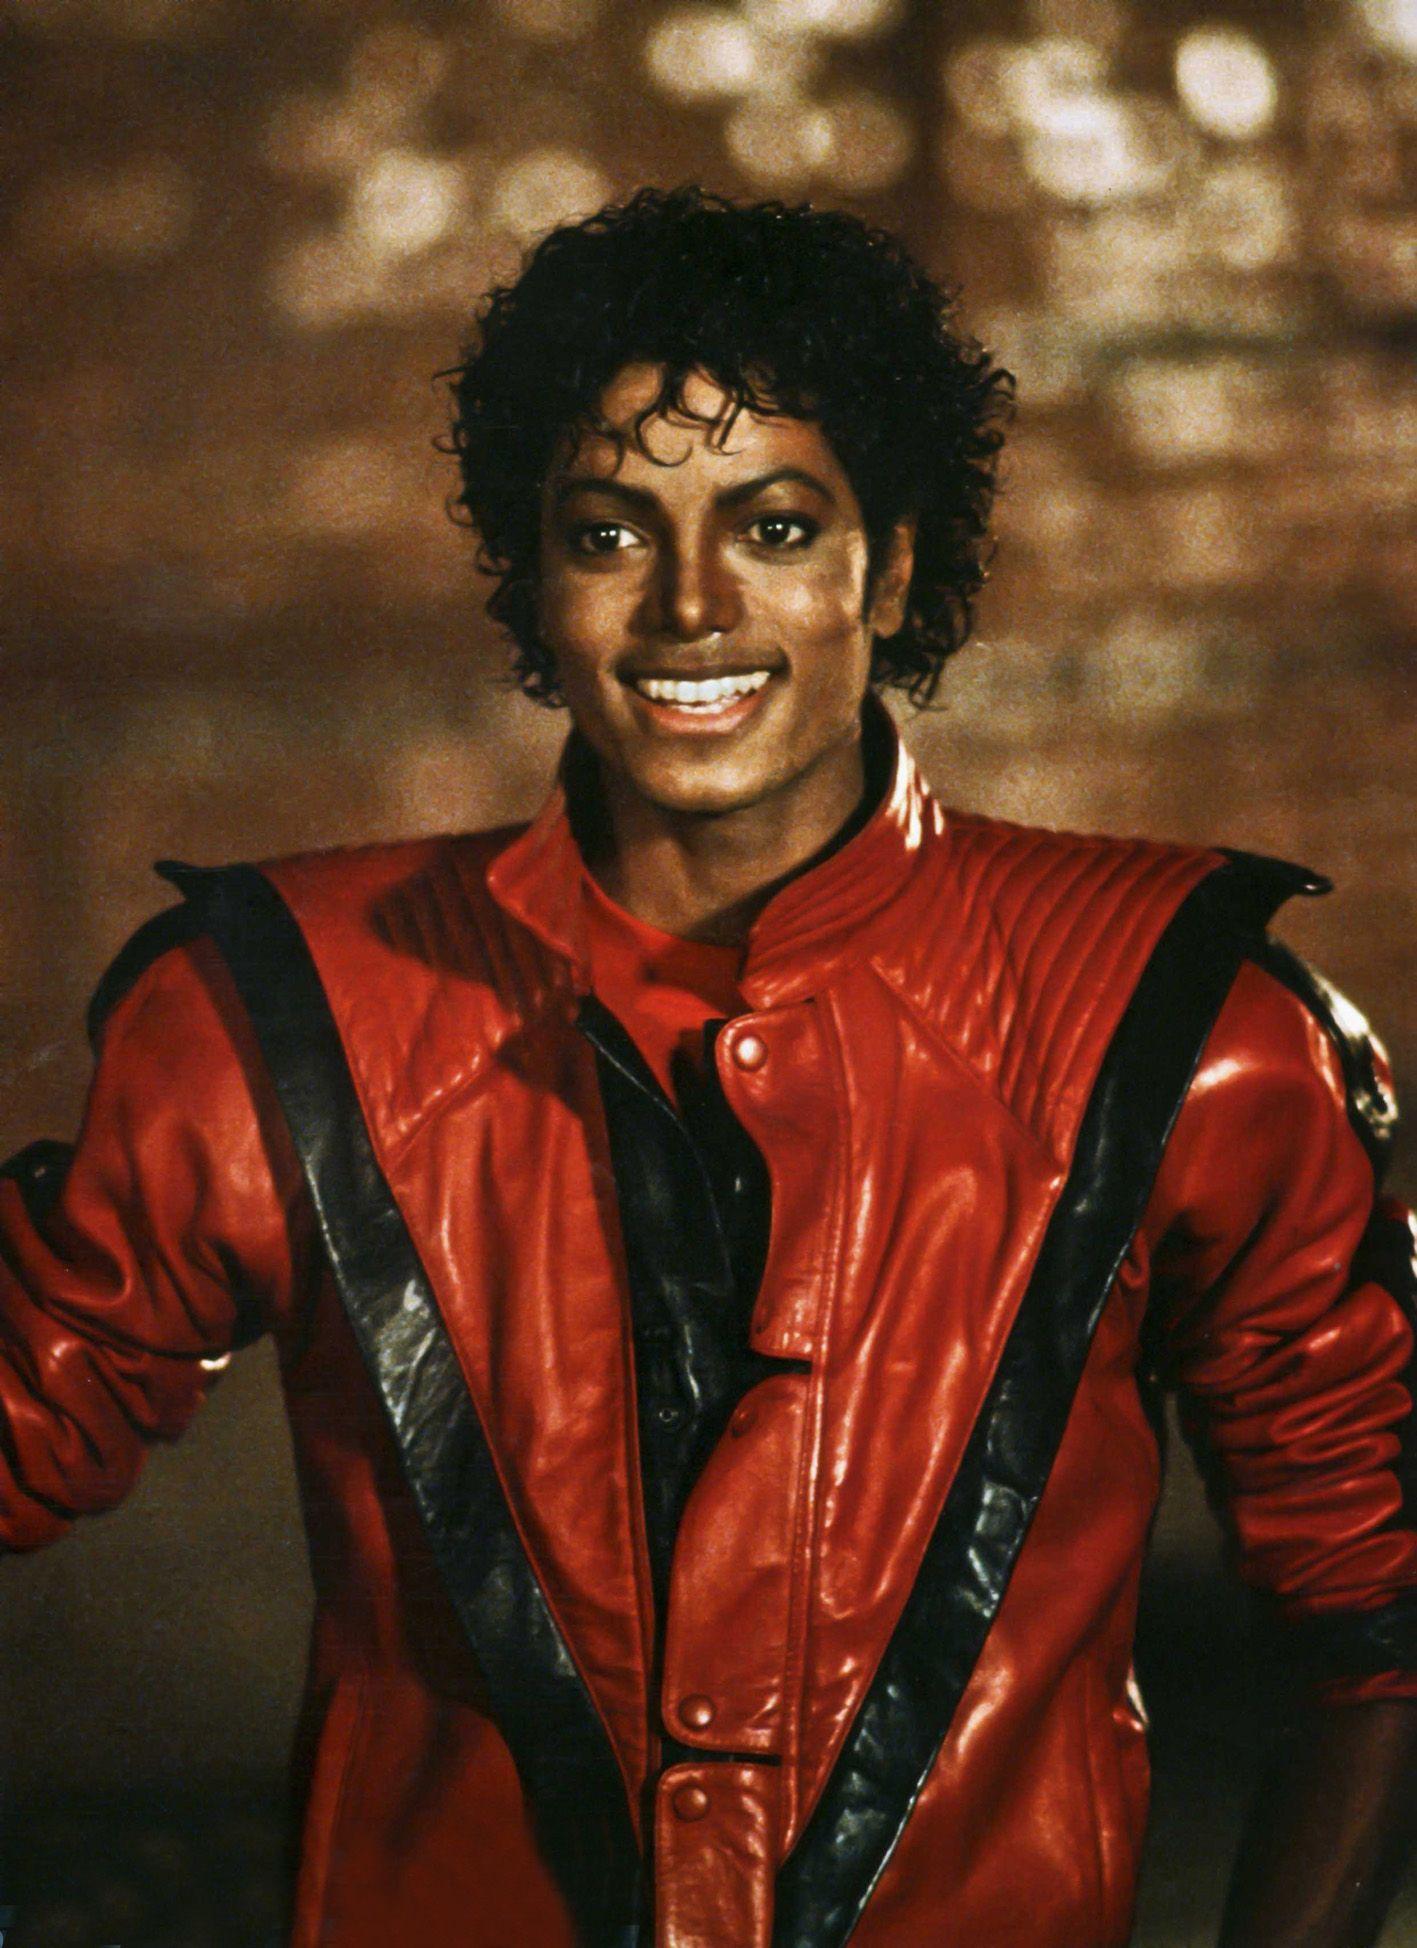 Thriller 1983 Thriller. Michael jackson